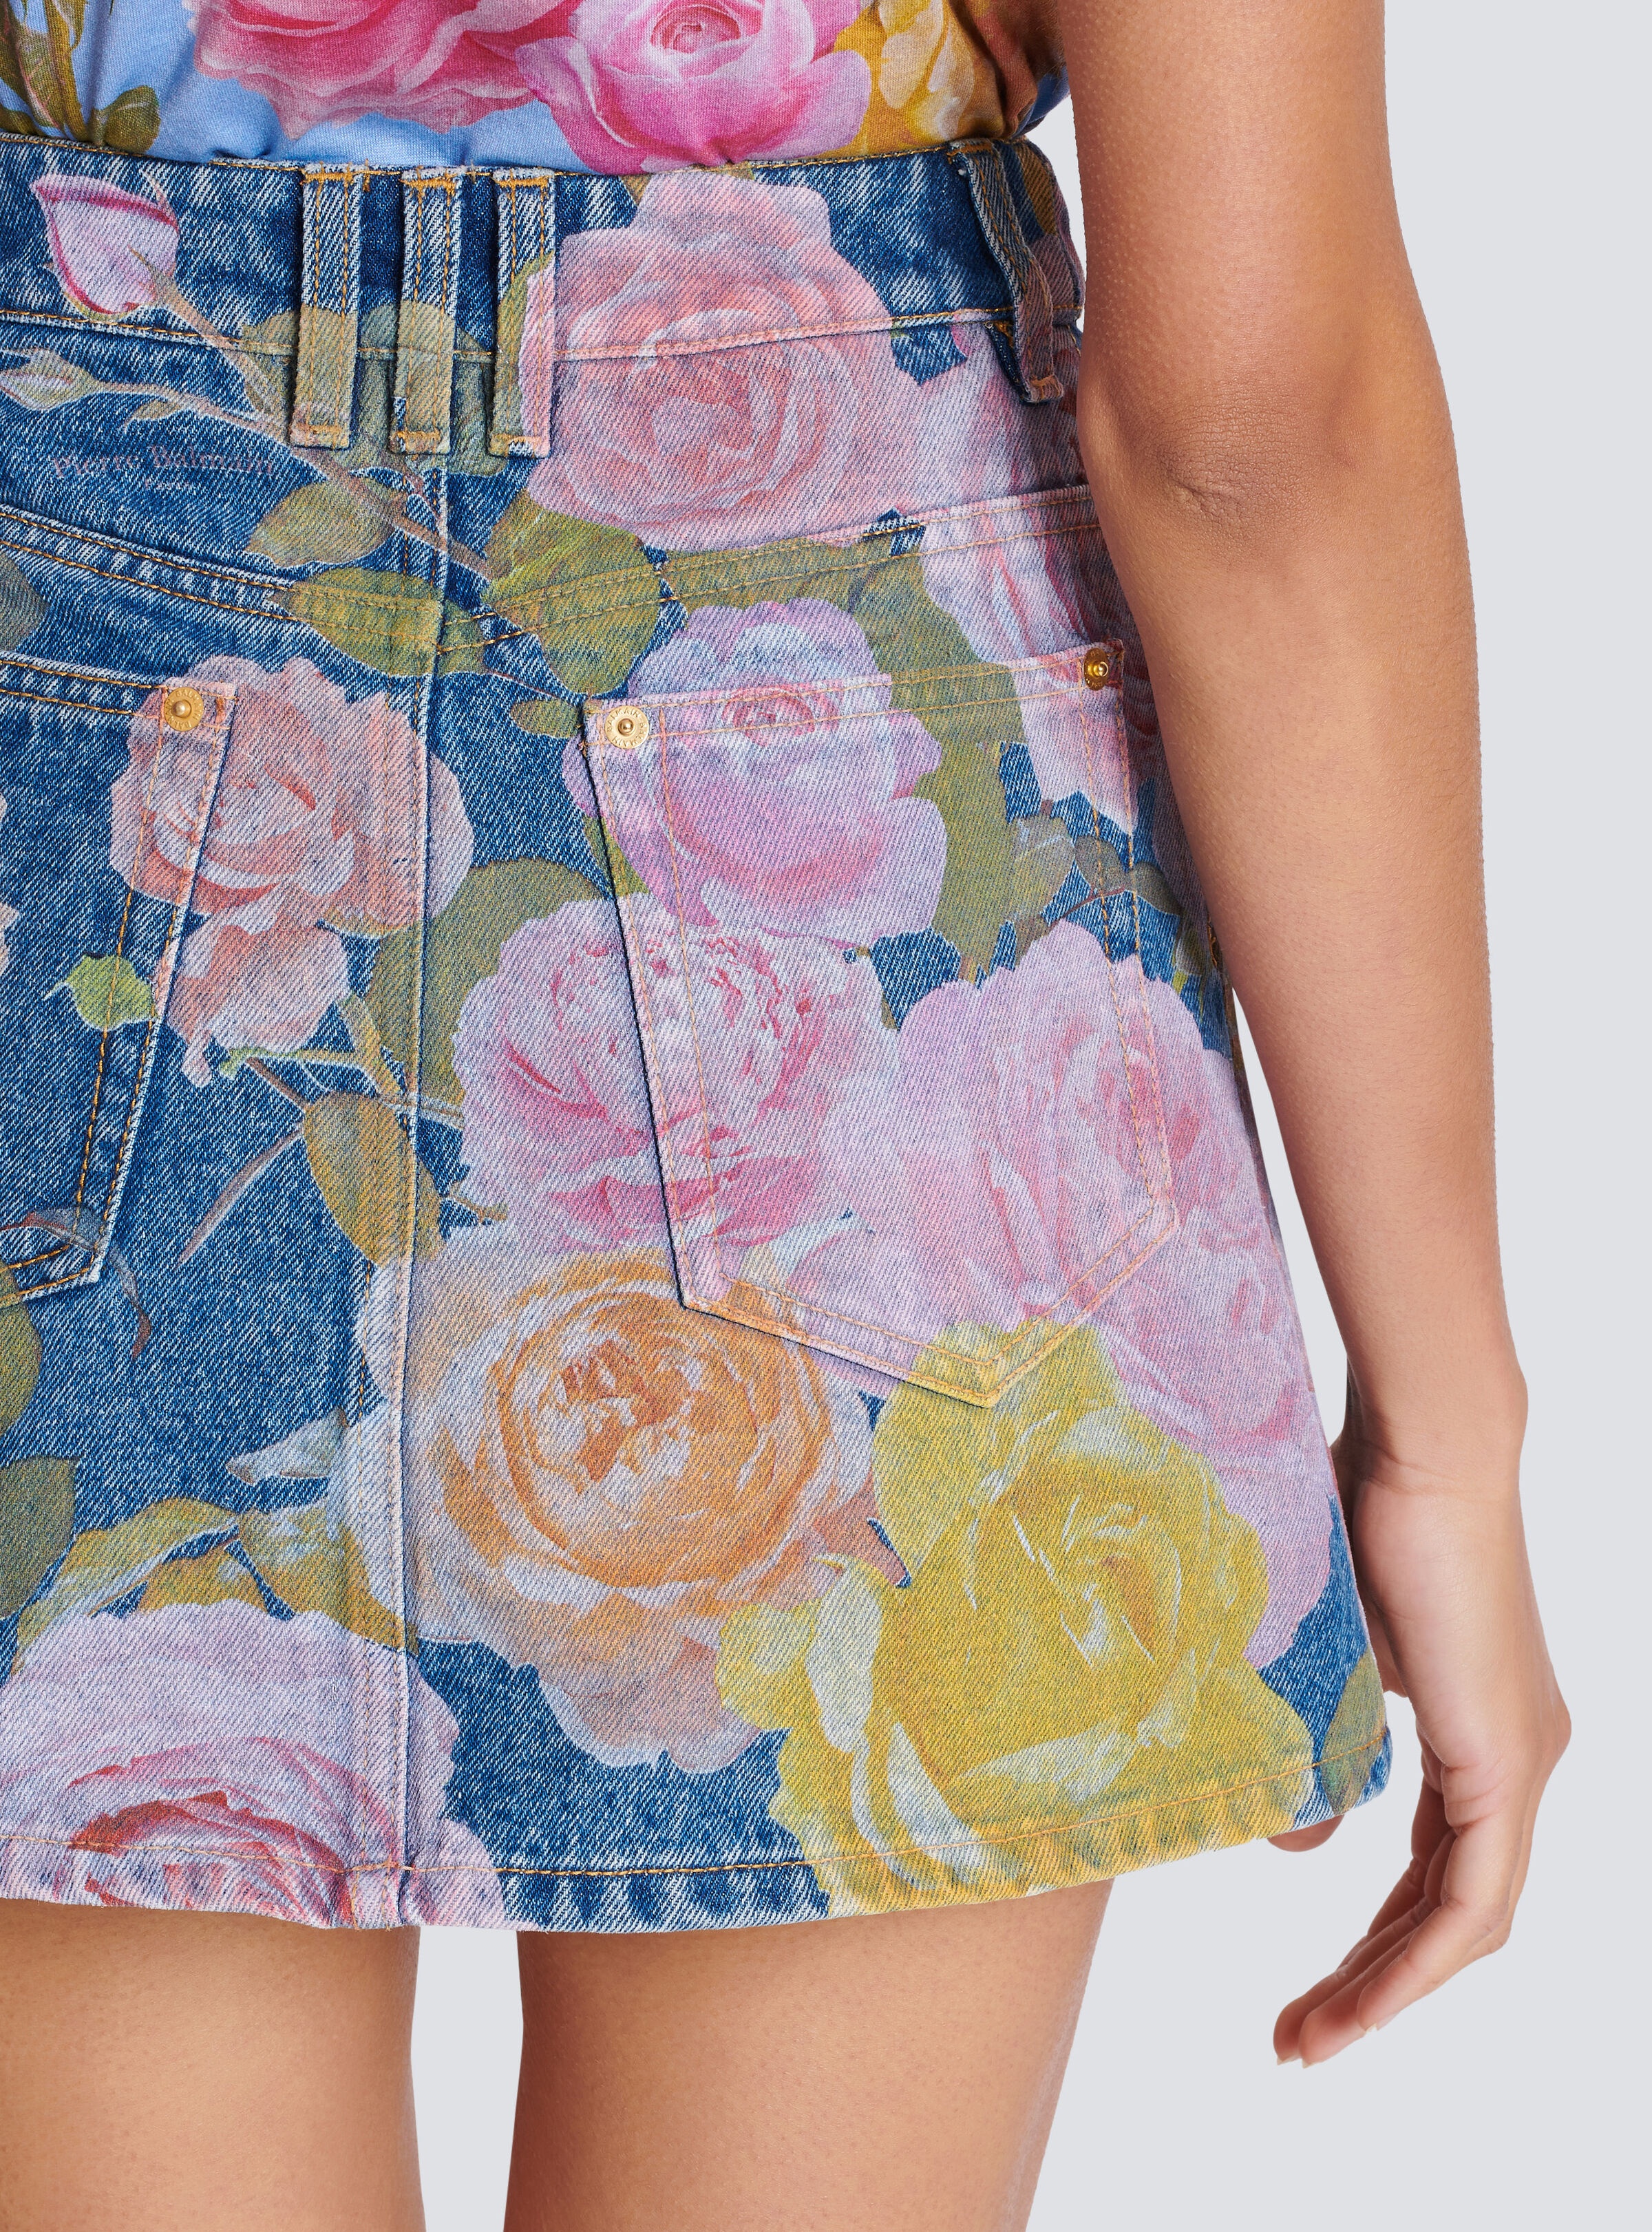 Pastel Roses printed denim skirt - 6